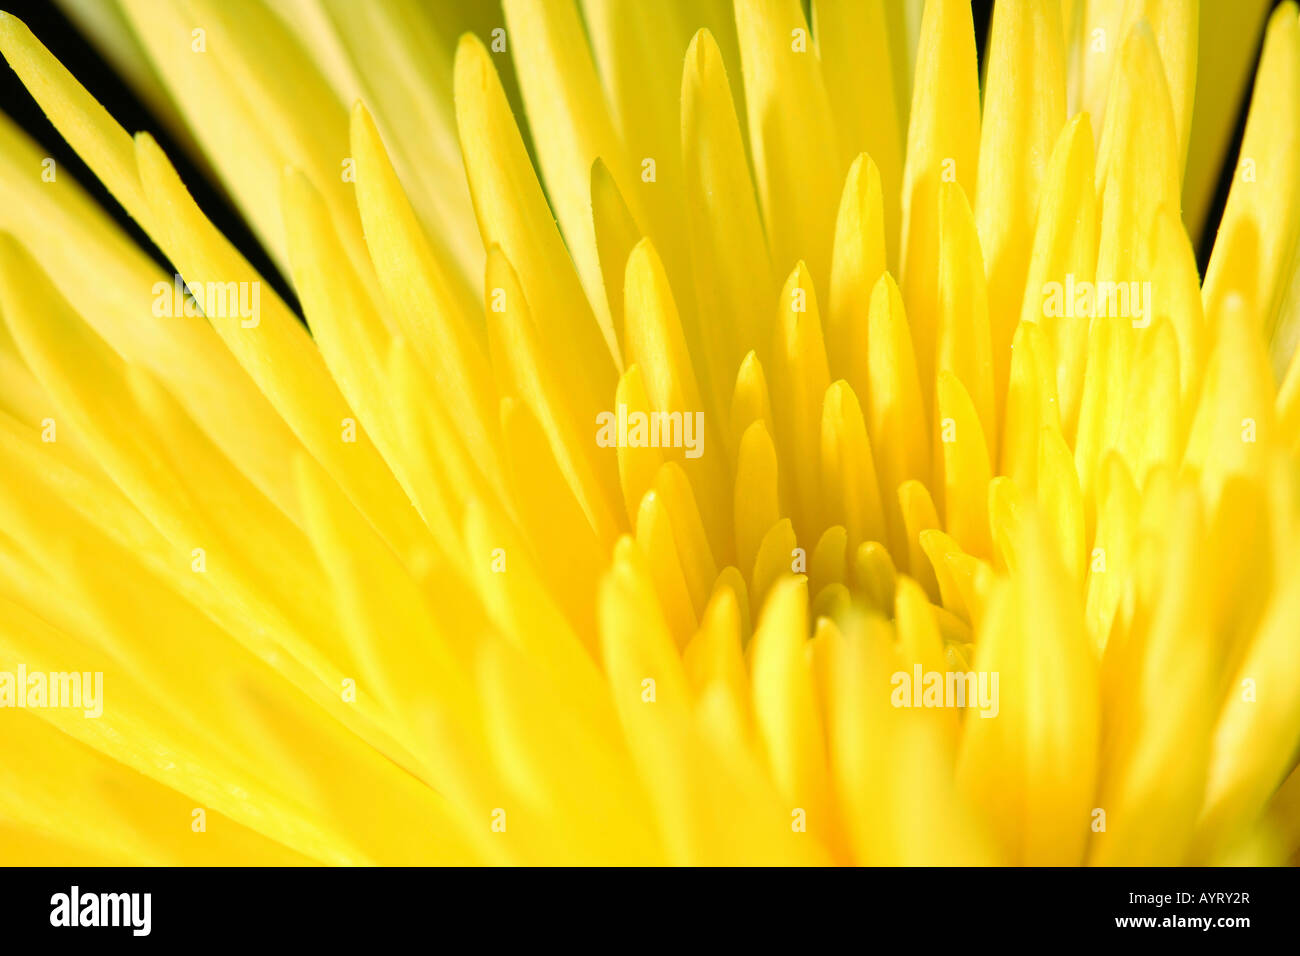 Detail, yellow chrysanthemum blossom (Chrysanthemum) Stock Photo